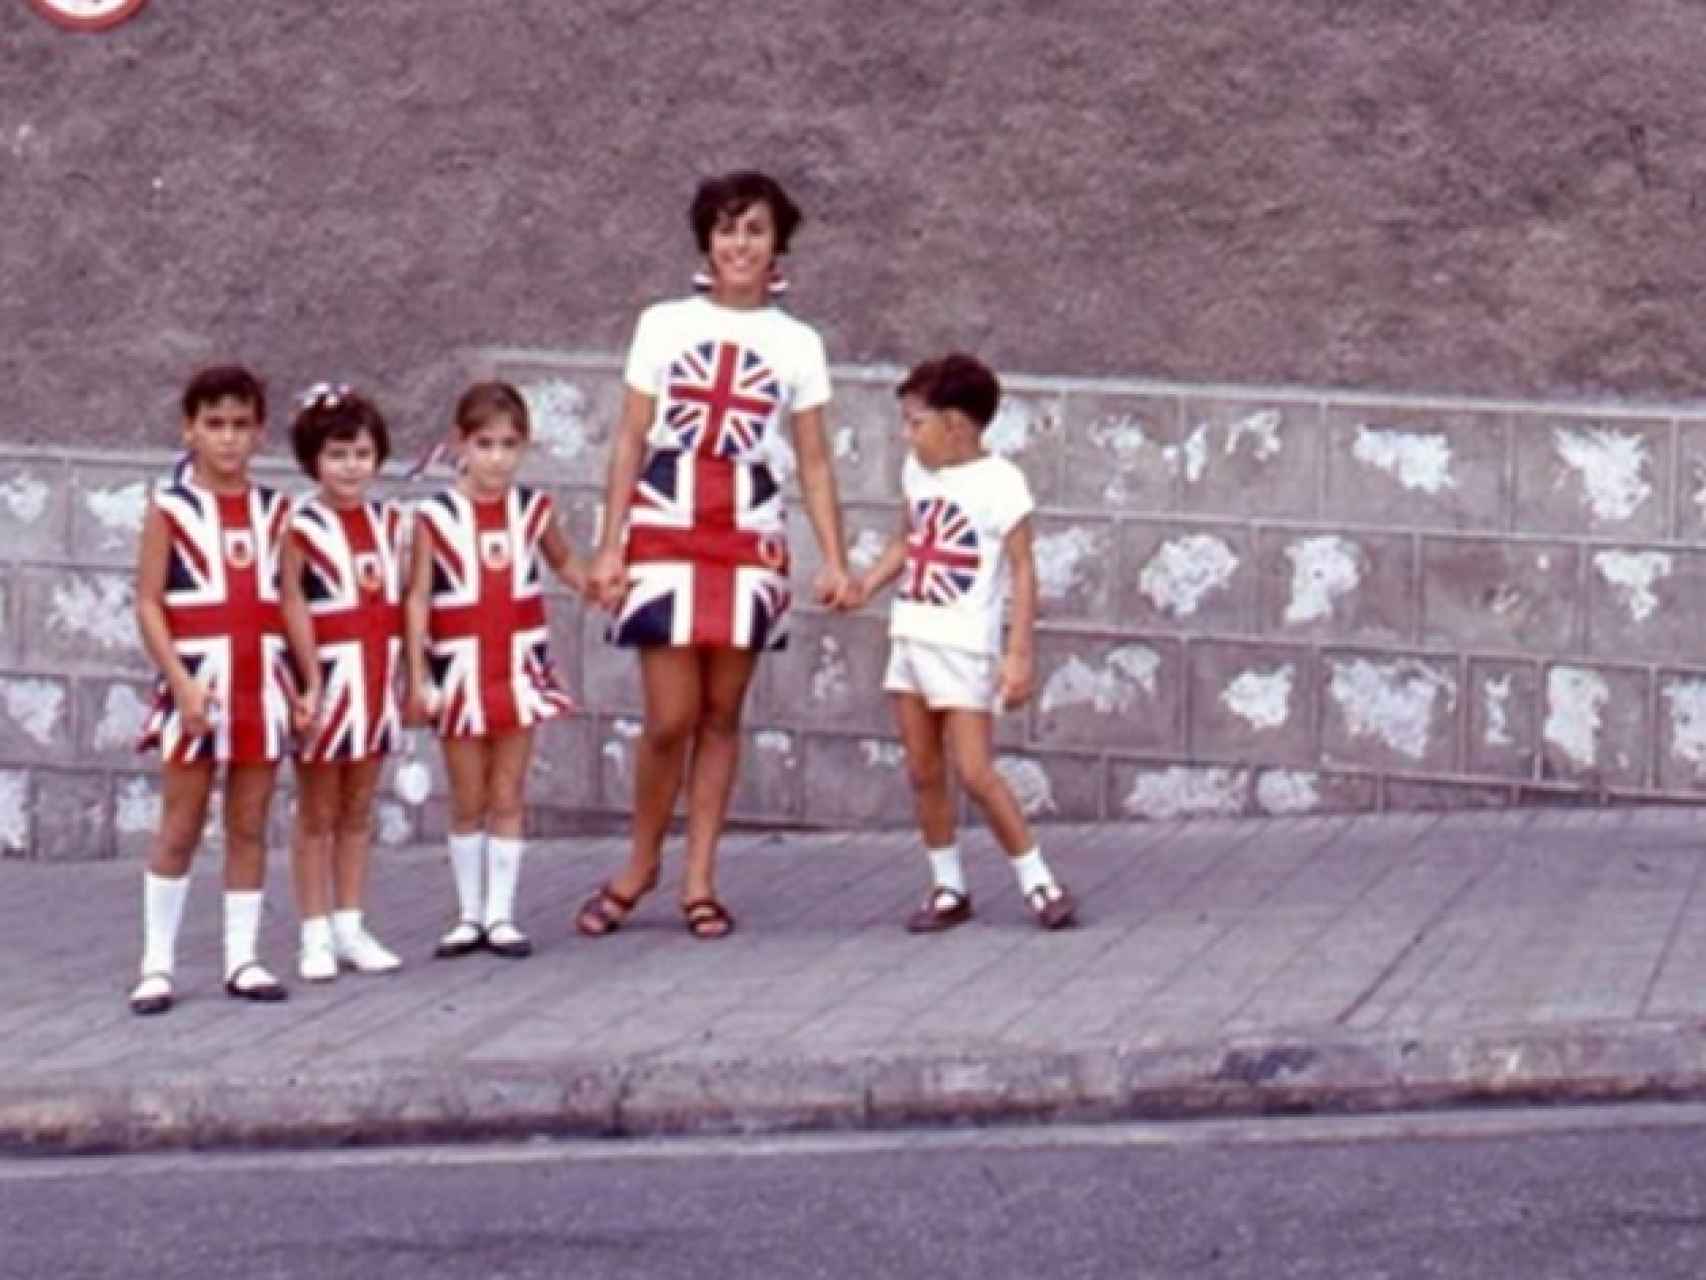 Imagen del día en que se celebró el referéndum en Gibraltar.